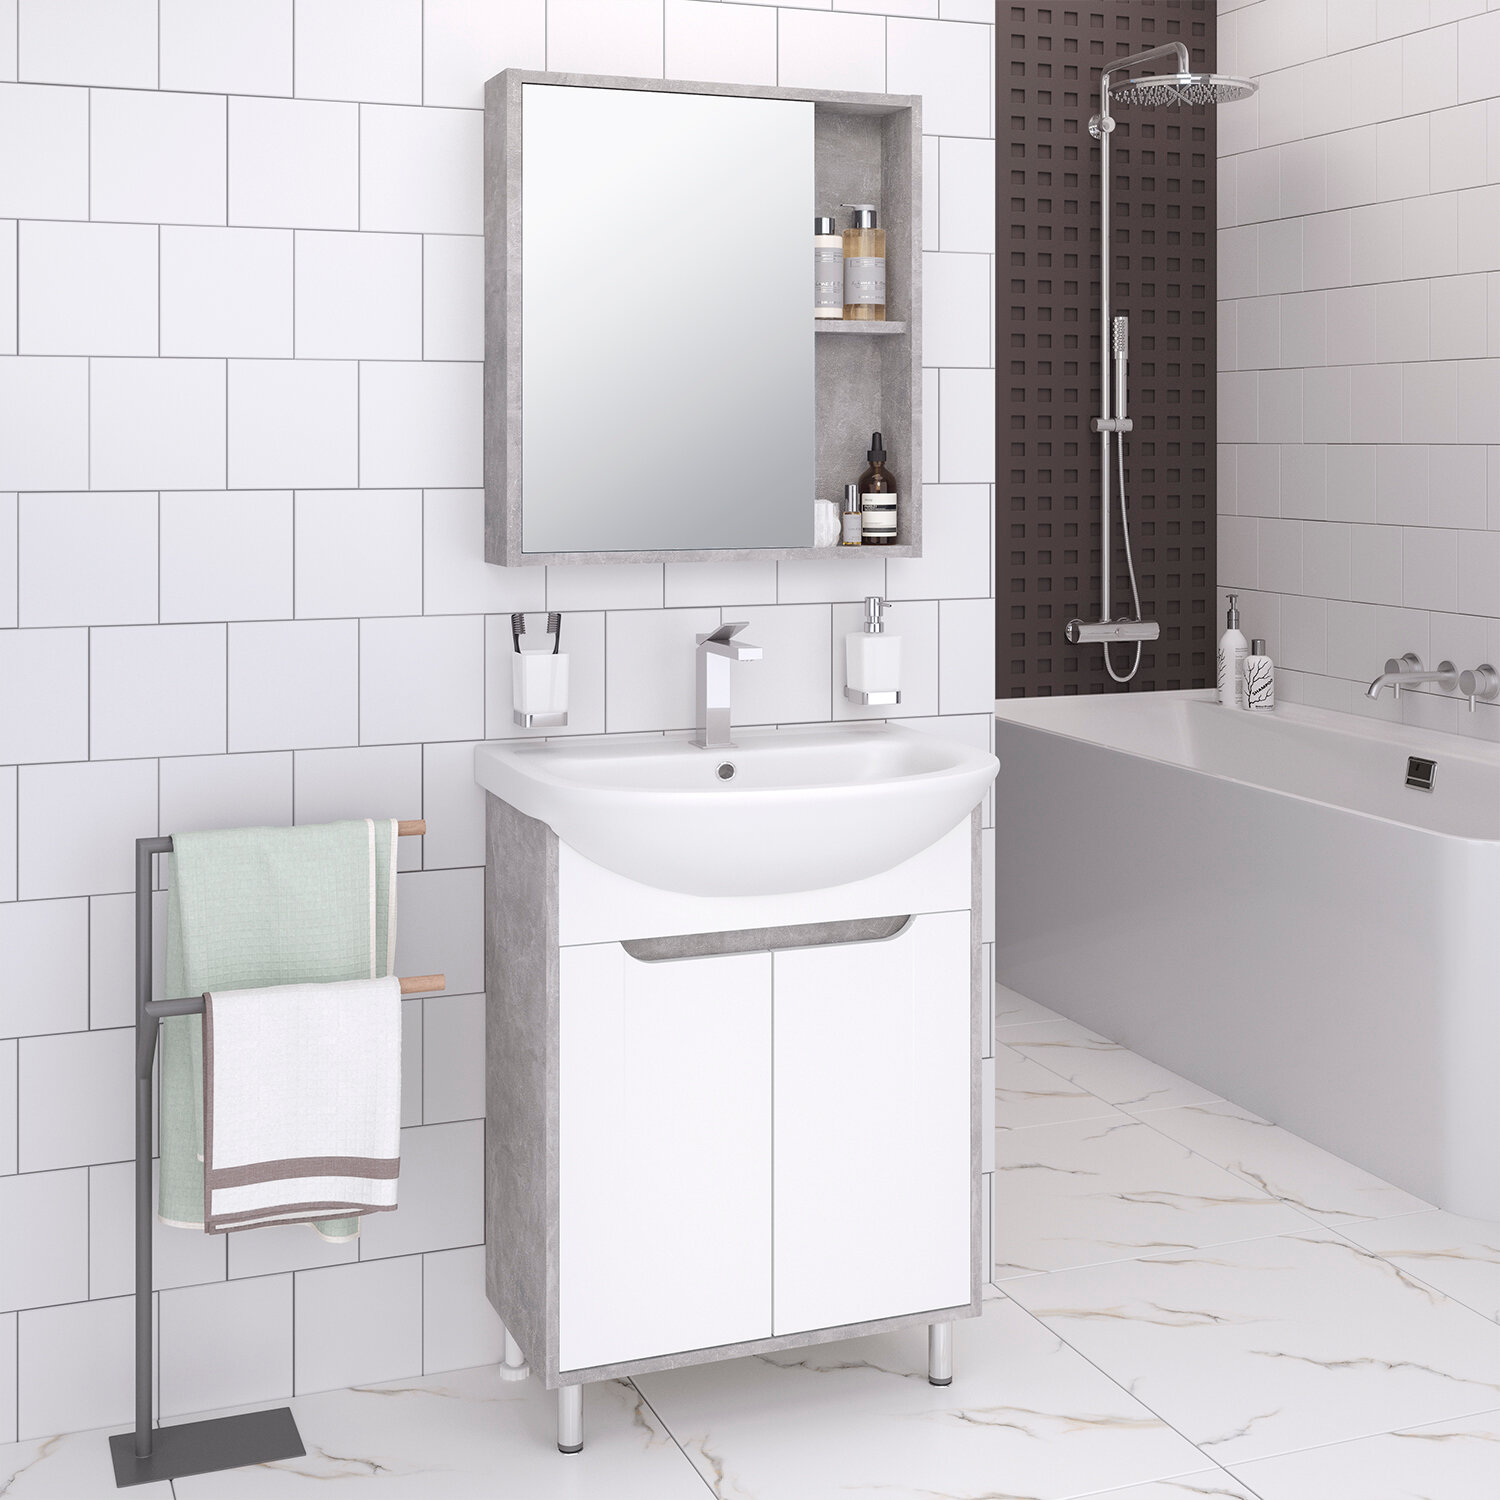 Мебель для ванной / Runo / Эко 50 / серый бетон / тумба с раковиной Уют 50 / шкаф для ванной / зеркало для ванной